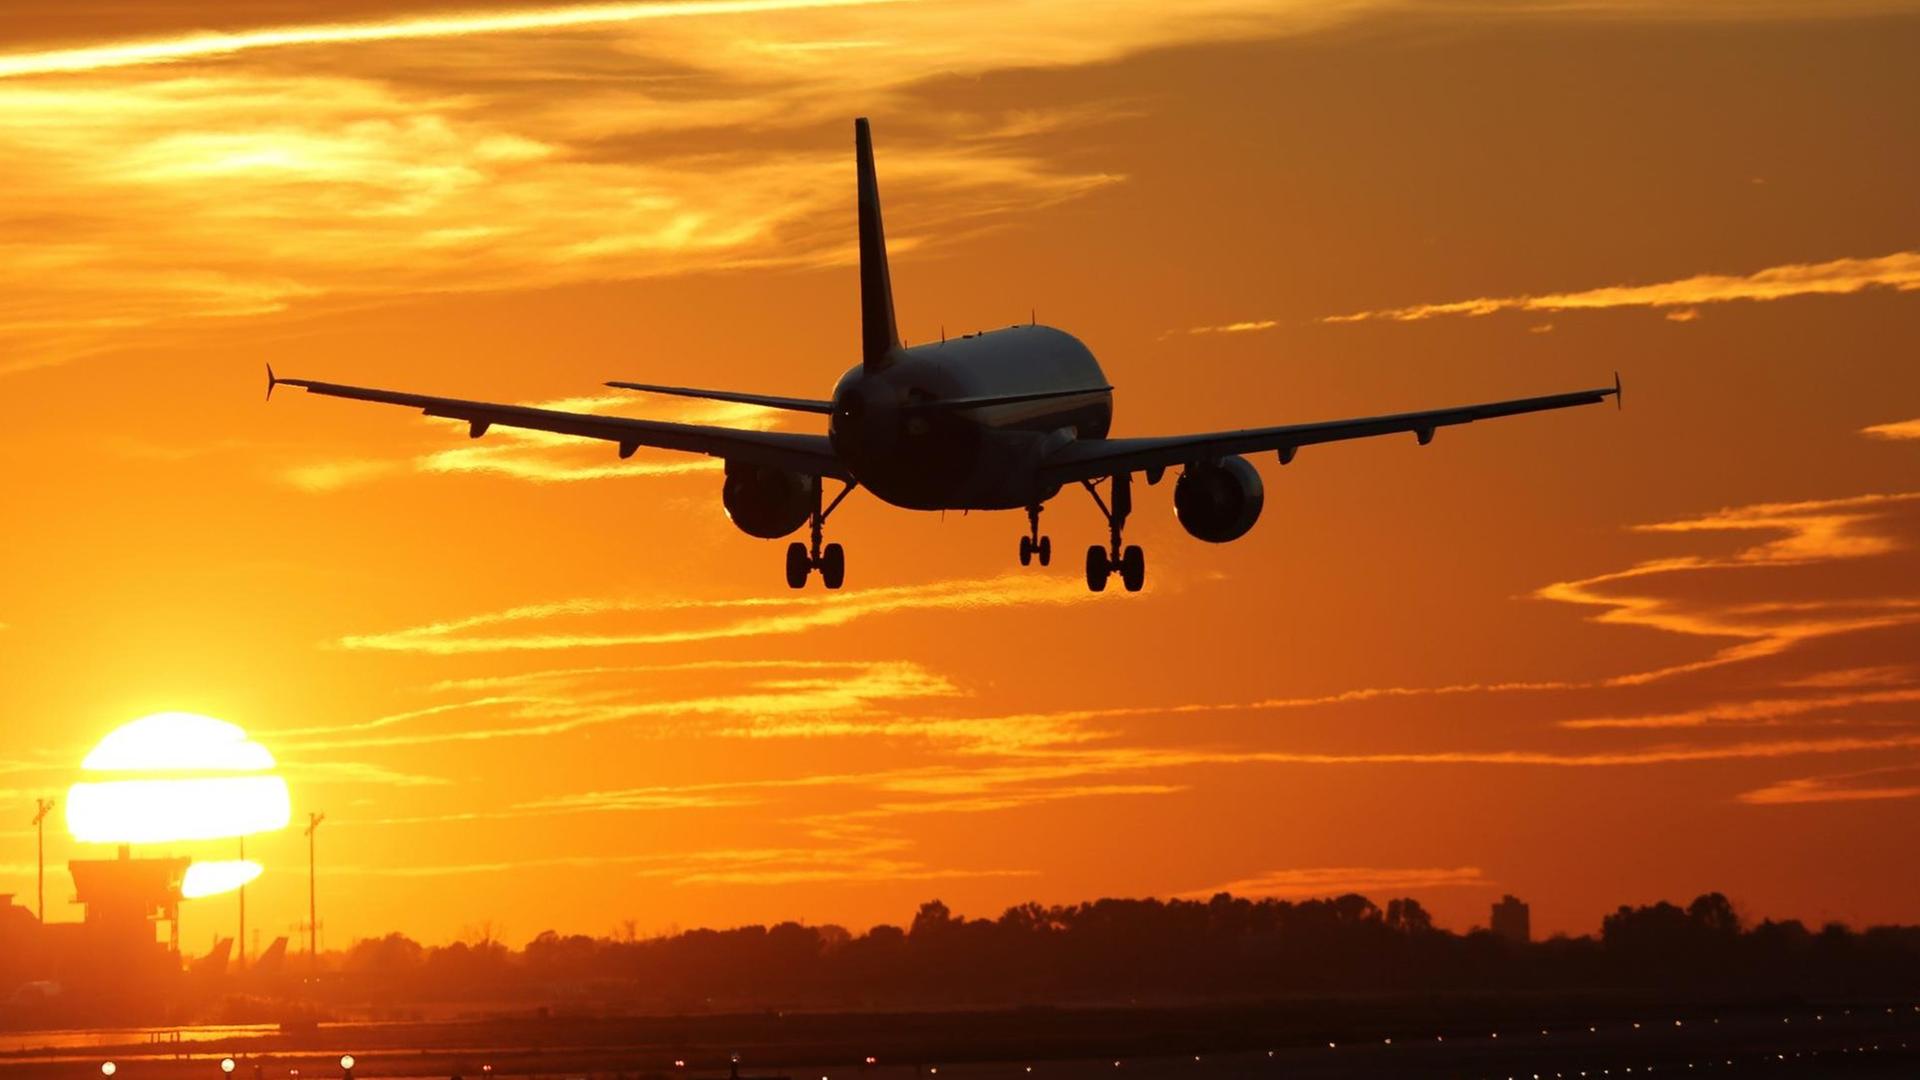 Ein Flugzeug beim Landen auf einem Flughafen mit Sonnenuntergang im Hintergrund.